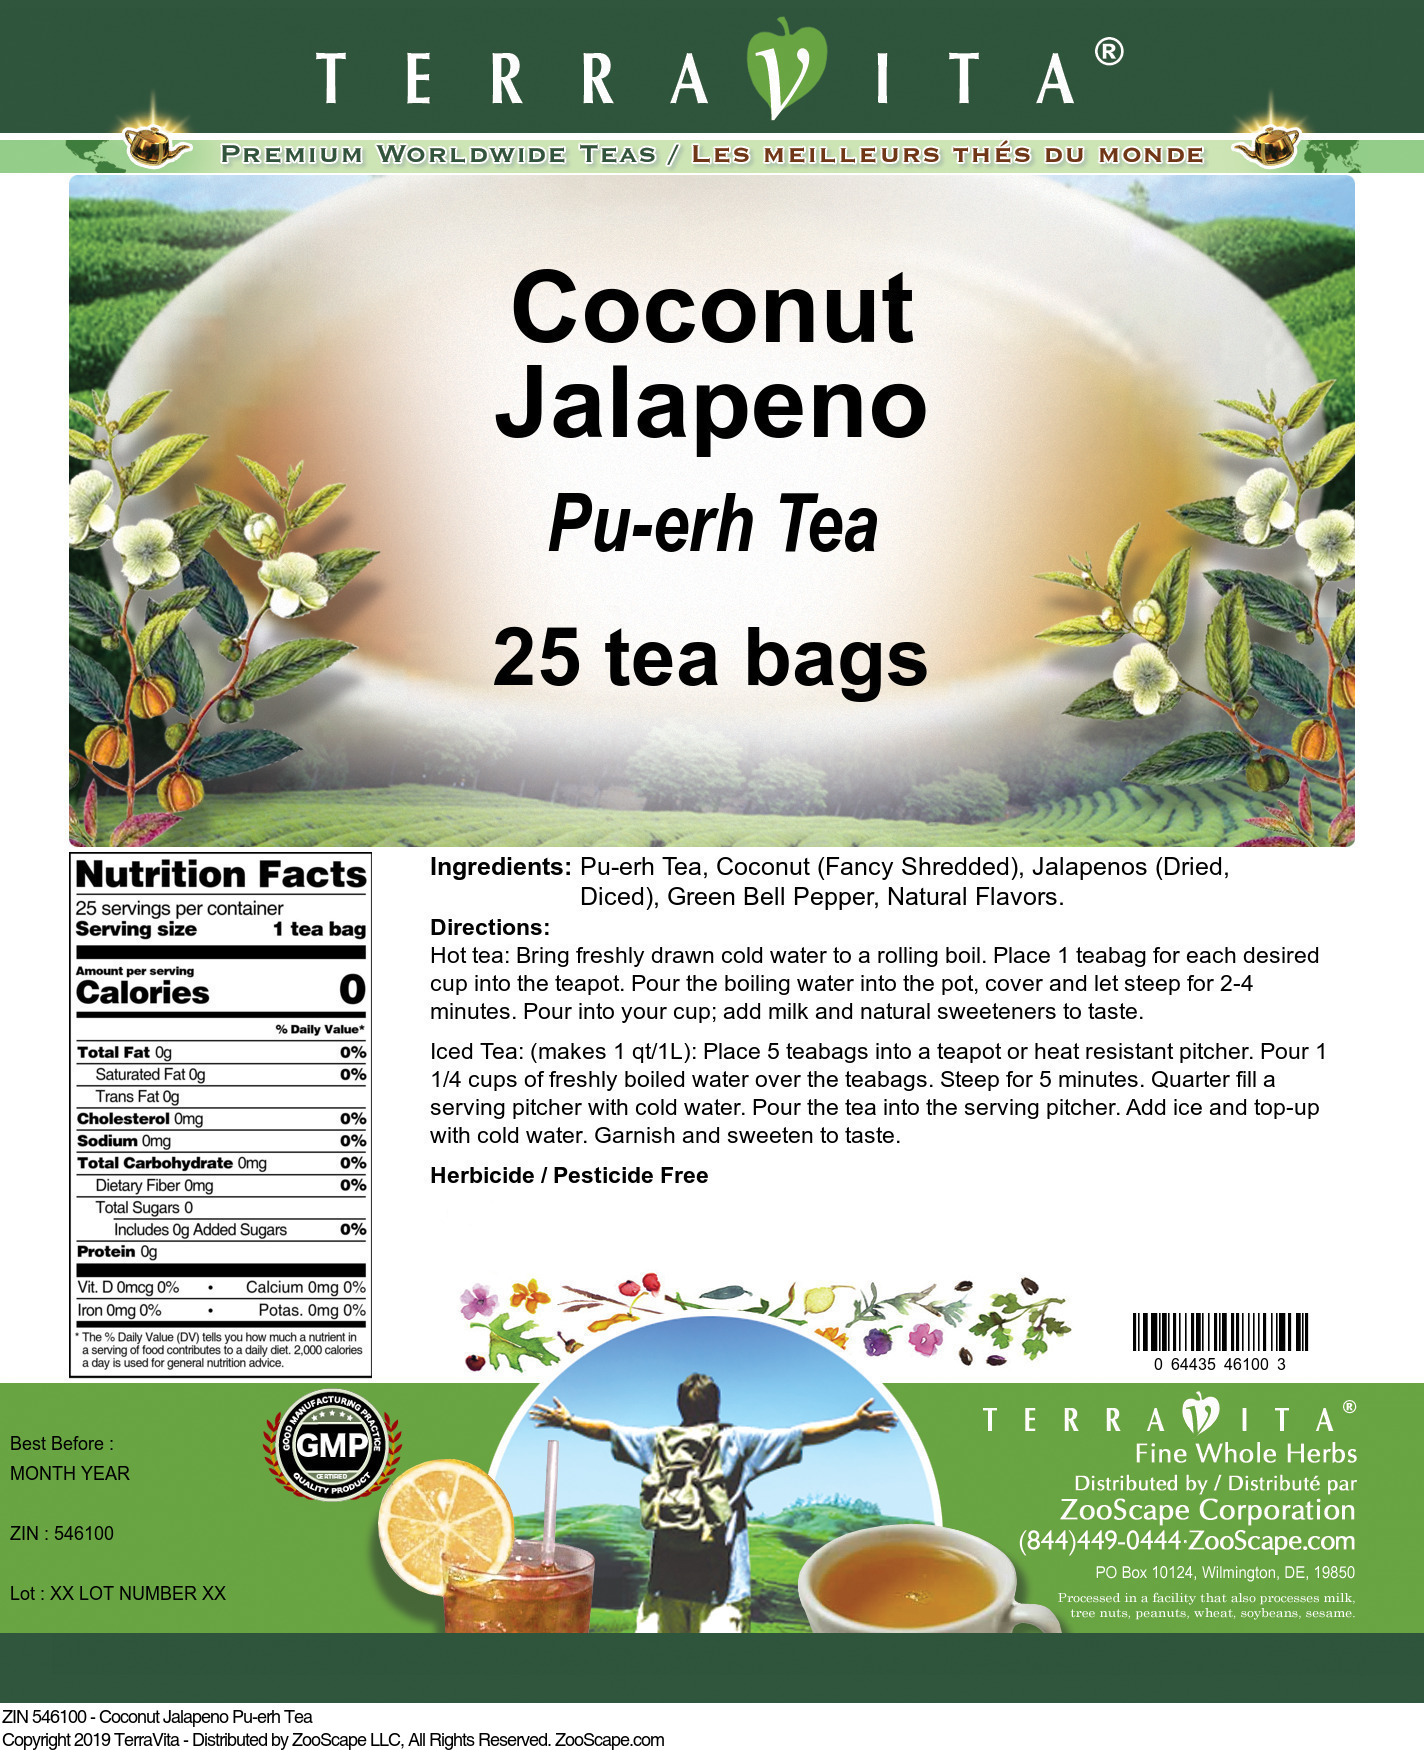 Coconut Jalapeno Pu-erh Tea - Label